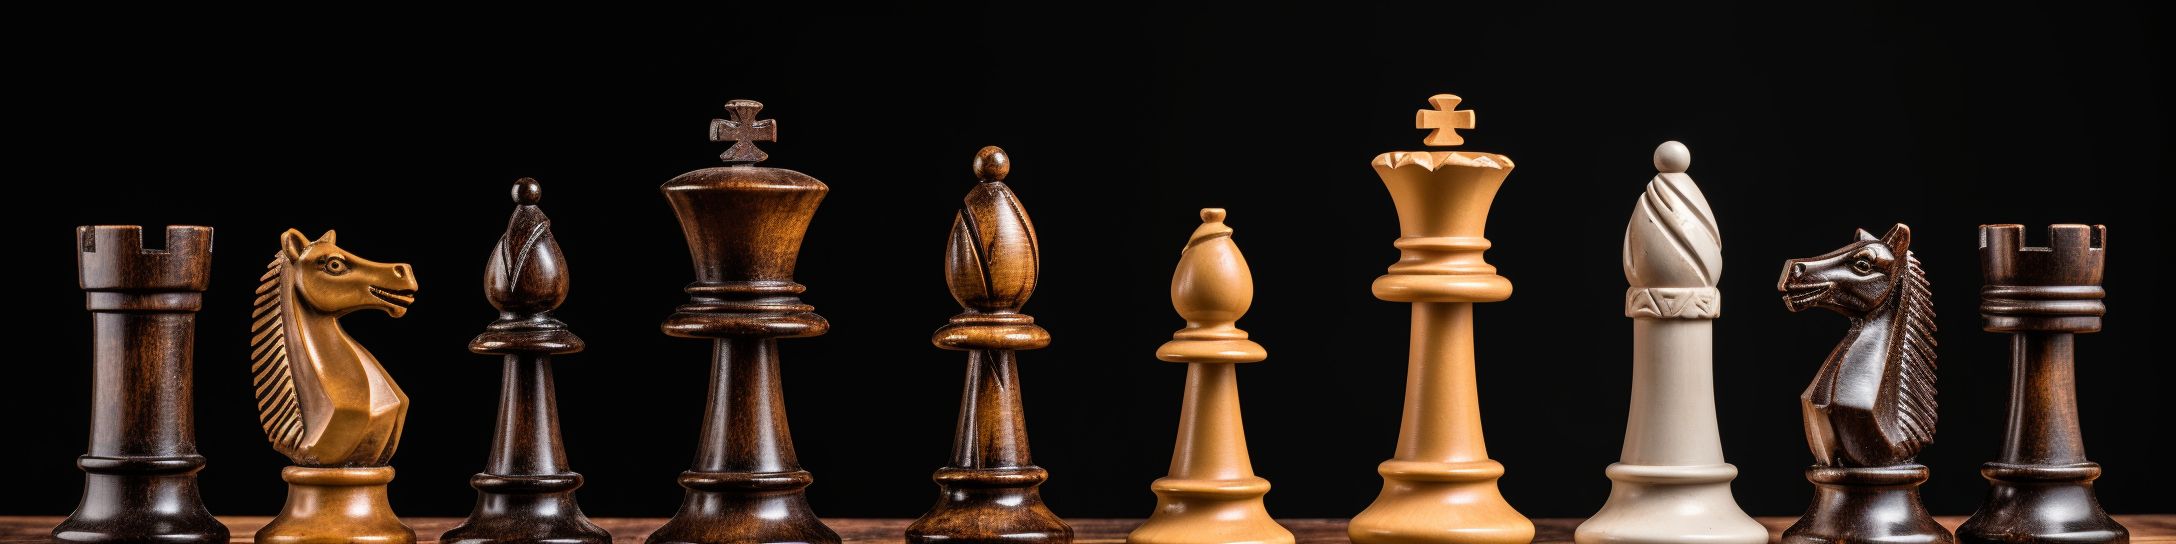 Comment la taille des pièces d'échecs influence l'expérience de jeu